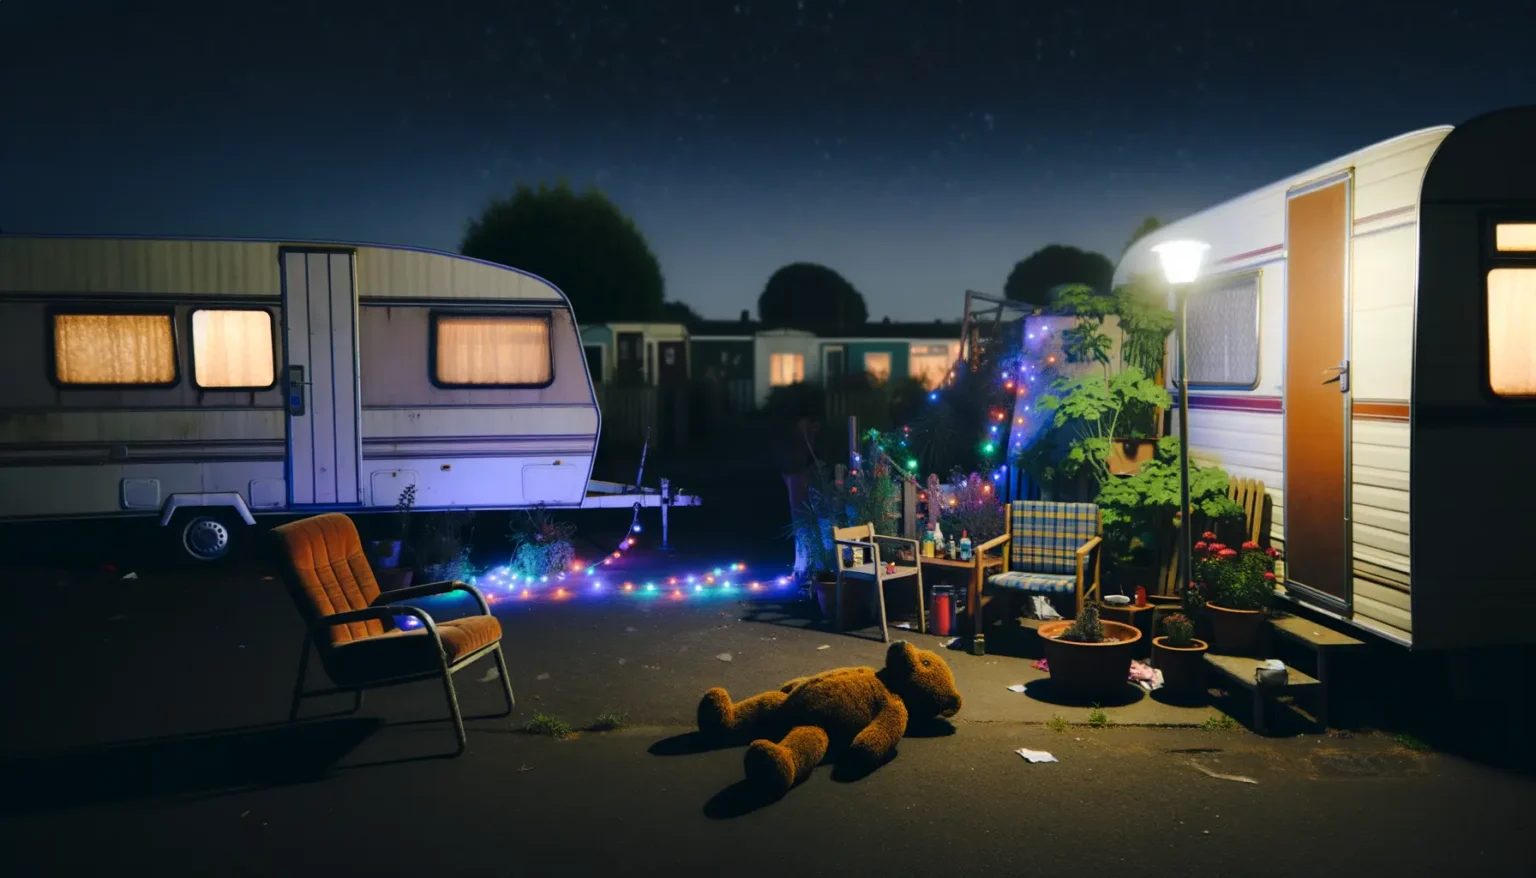 Nächtliche Szene in einem Wohnwagenpark mit beleuchteten Wohnwagen und einem klaren Sternenhimmel. Ein verlassener orangener Liegestuhl, ein umgeworfener Teddybär und leuchtende Weihnachtslichter erzeugen eine ruhige, aber leicht unordentliche Atmosphäre.